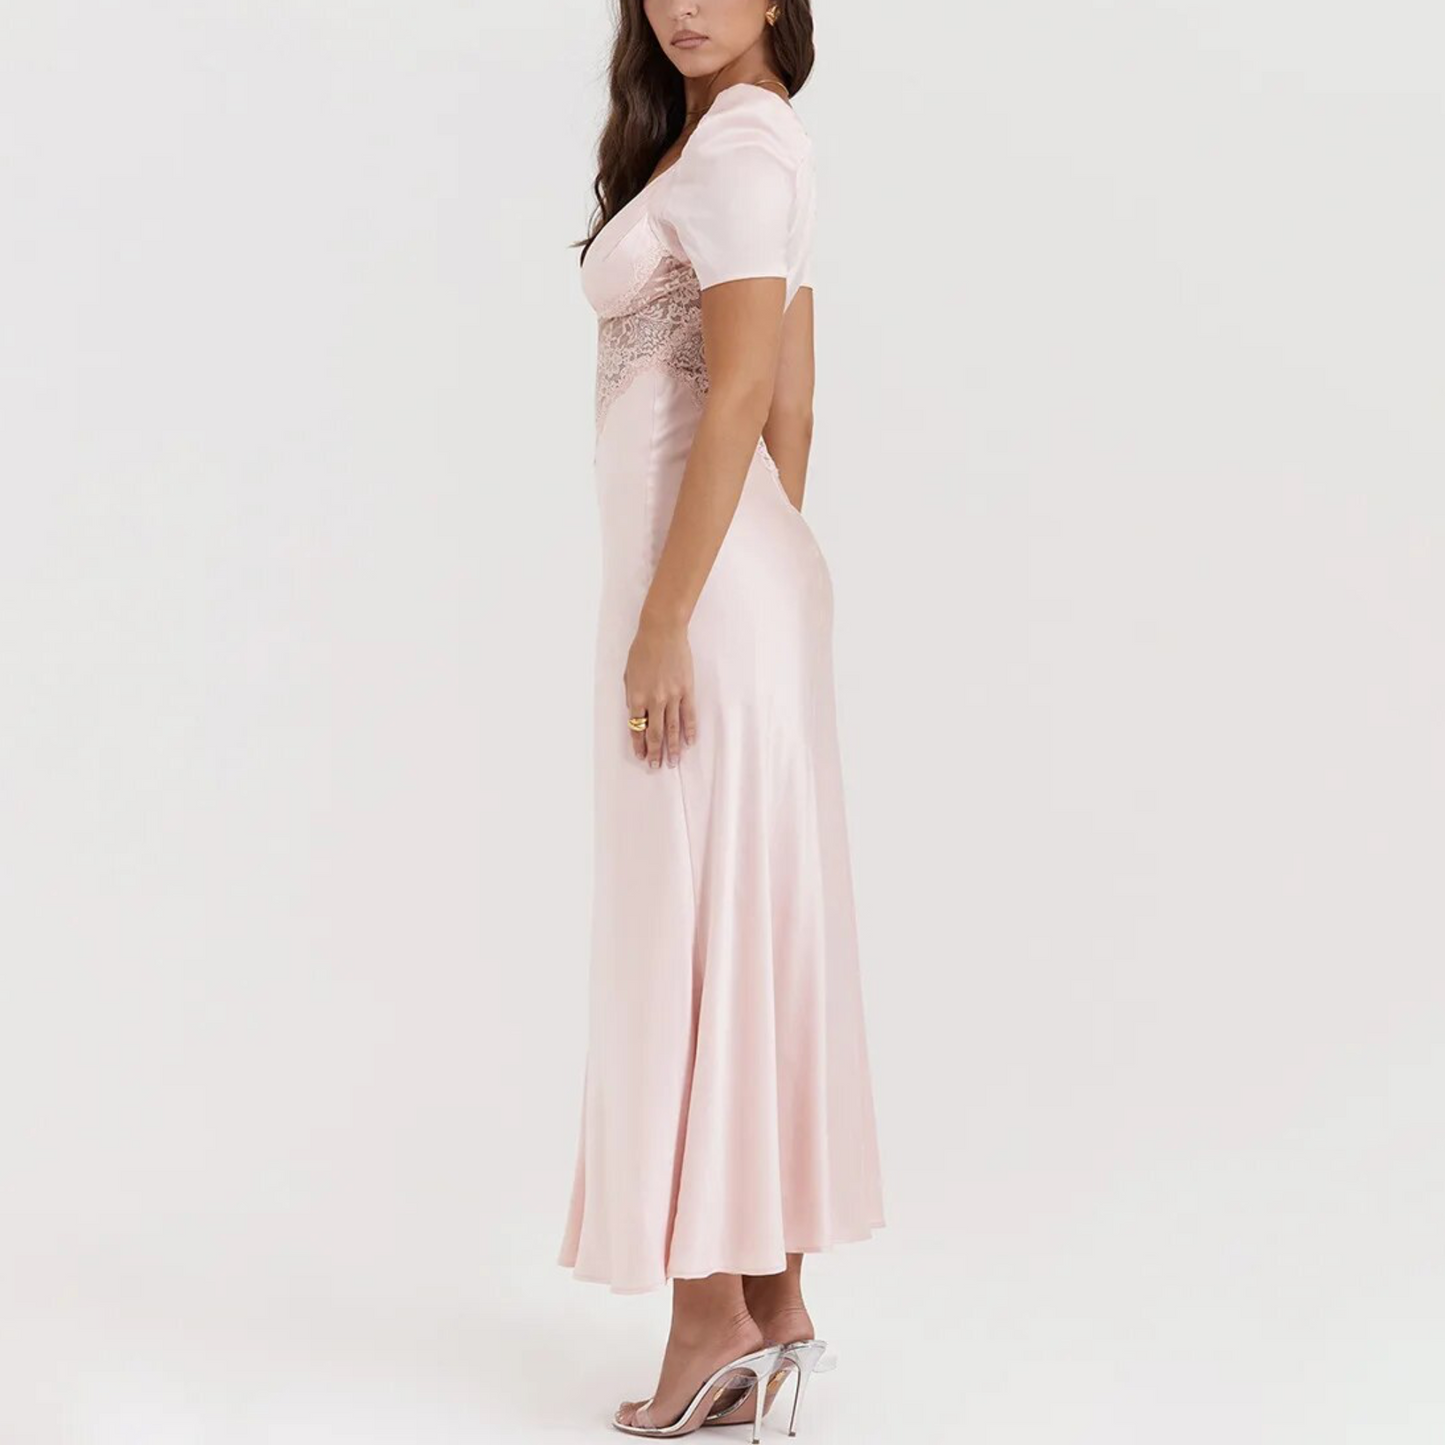 Bianca - Pink Satin Puff Sleeve Maxi Dress